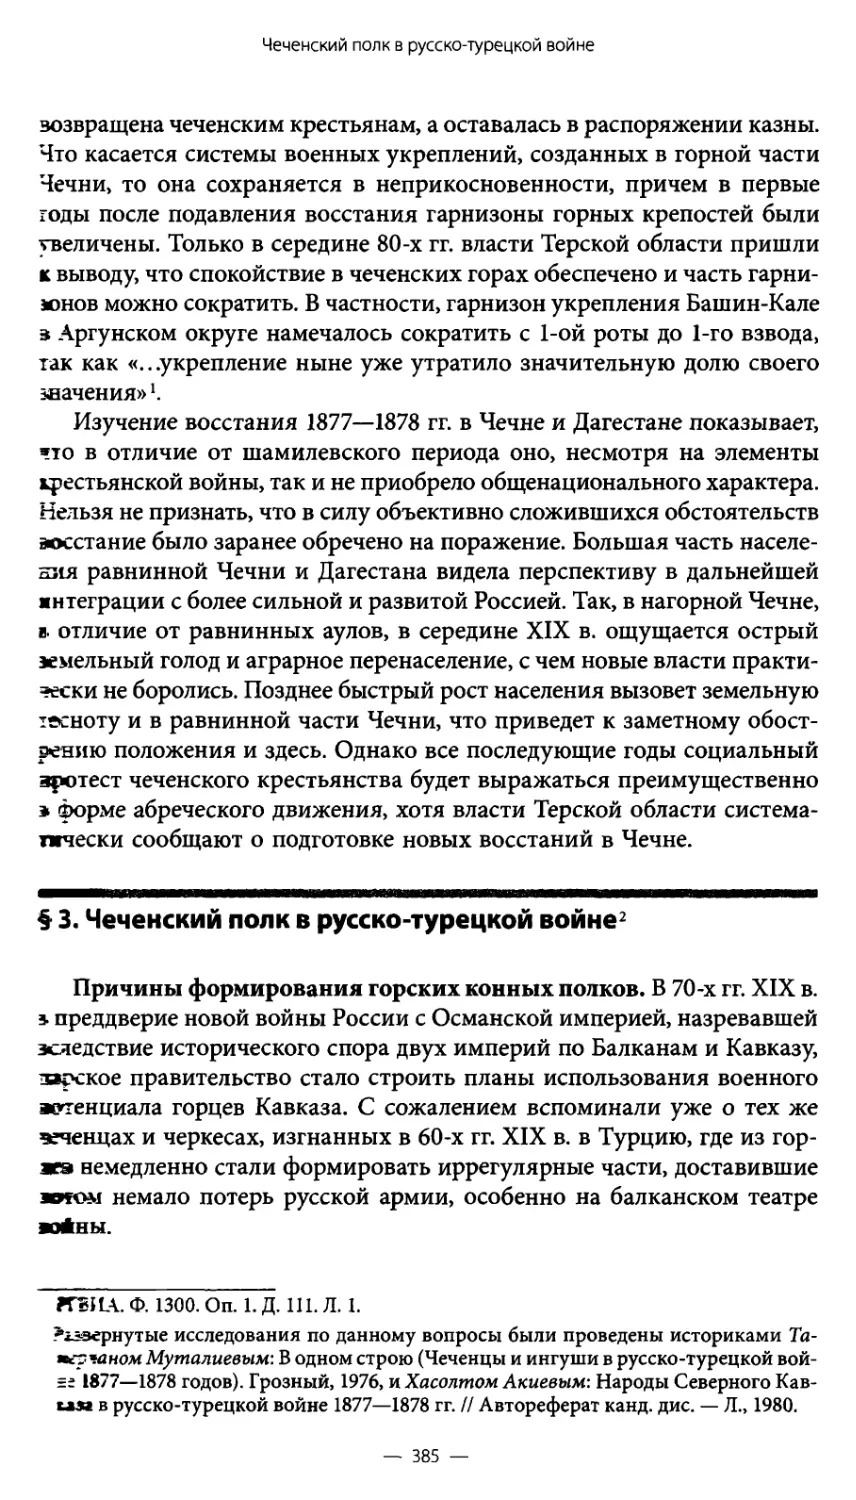 § 3. Чеченский полк в русско-турецкой войне